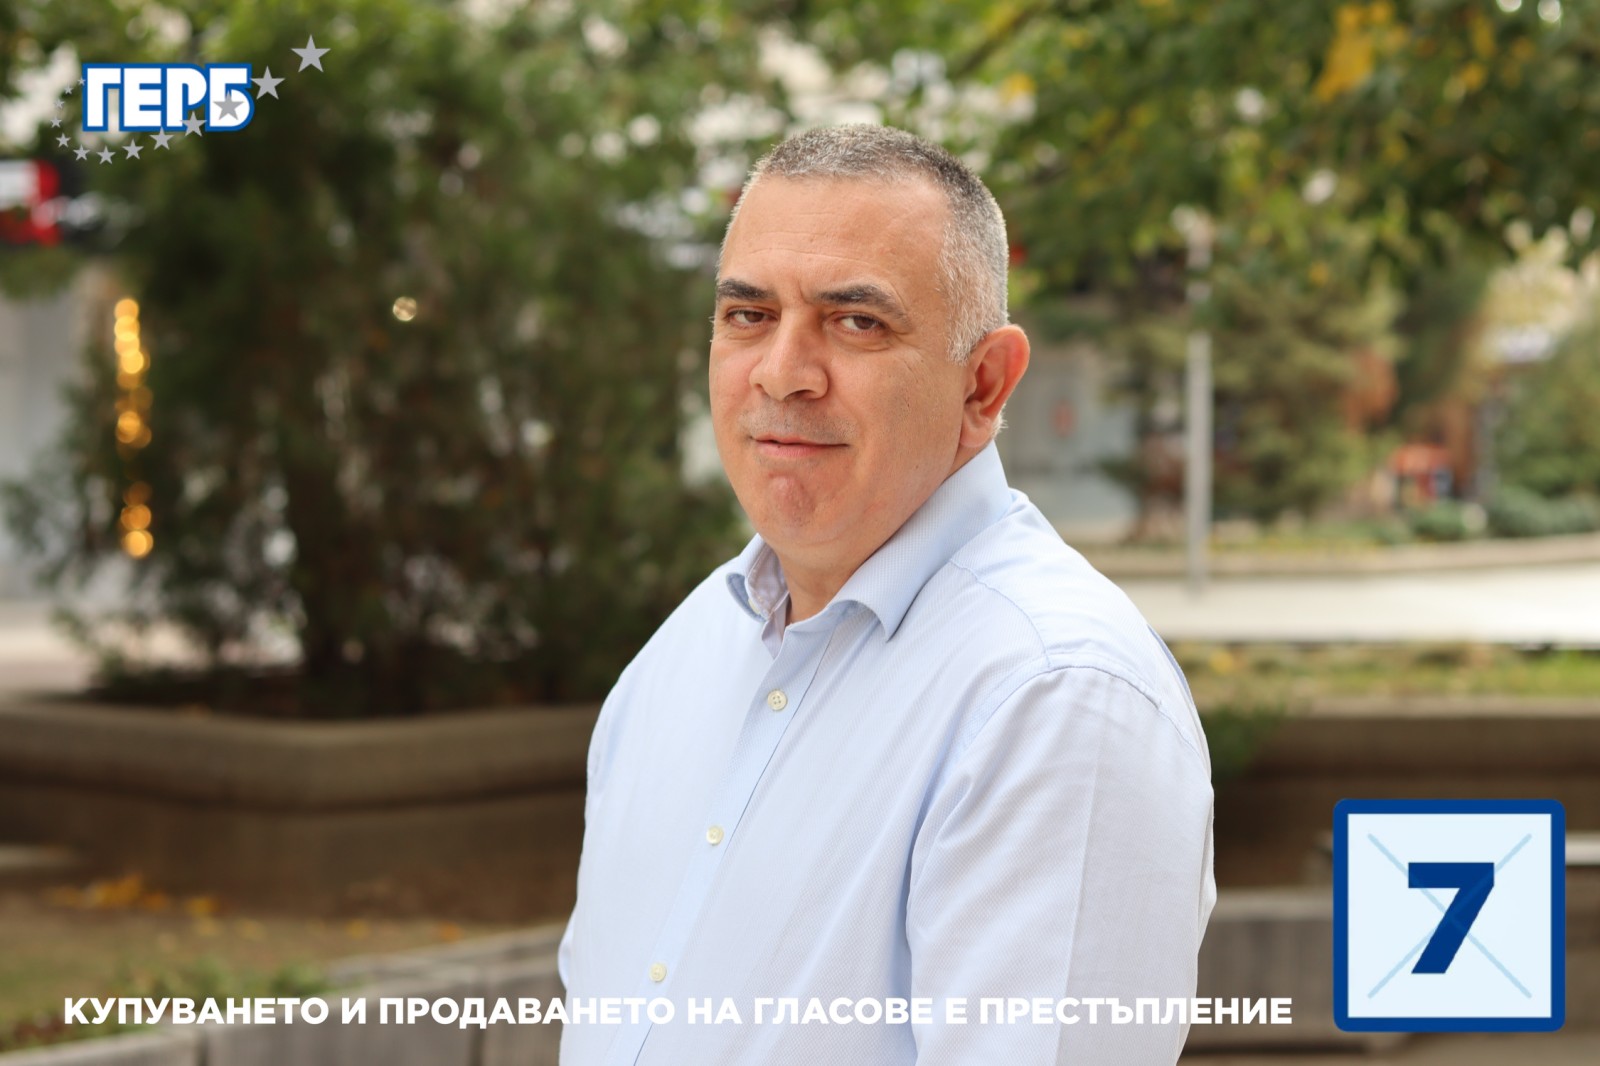 Кандидатът за трети кметски мандат Стефан Радев е безапелационен победител